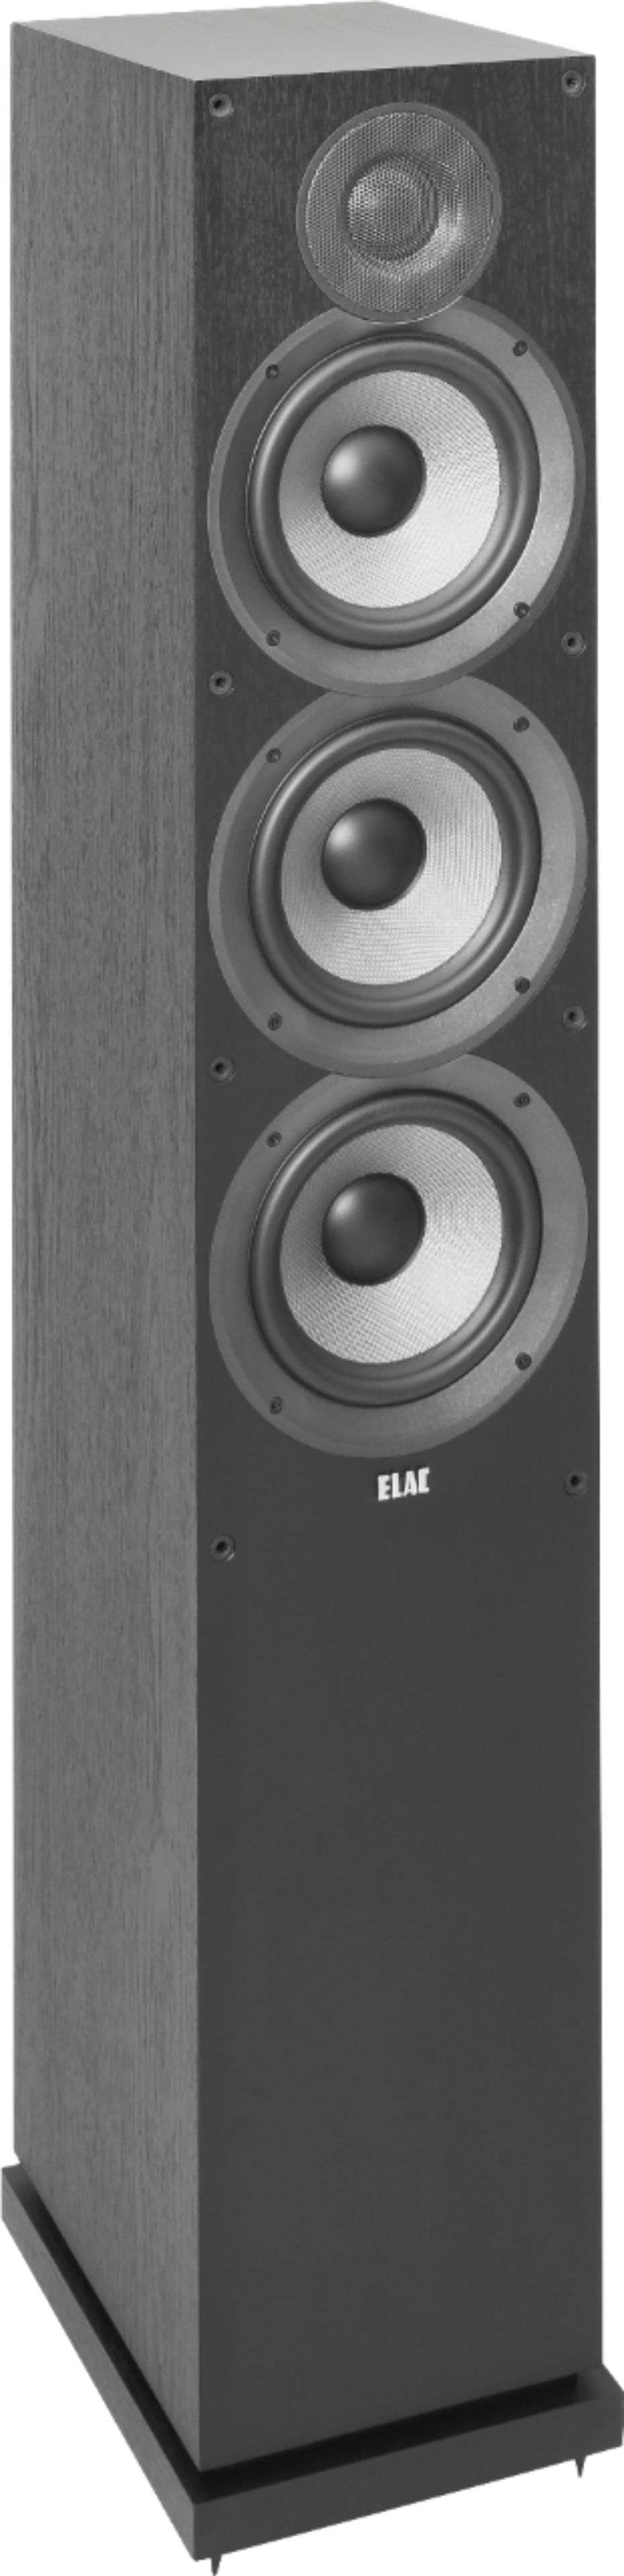 Angle View: ELAC - Debut 2.0 Dual 6-1/2" 3-Way Floorstanding Speaker (Each) - Black